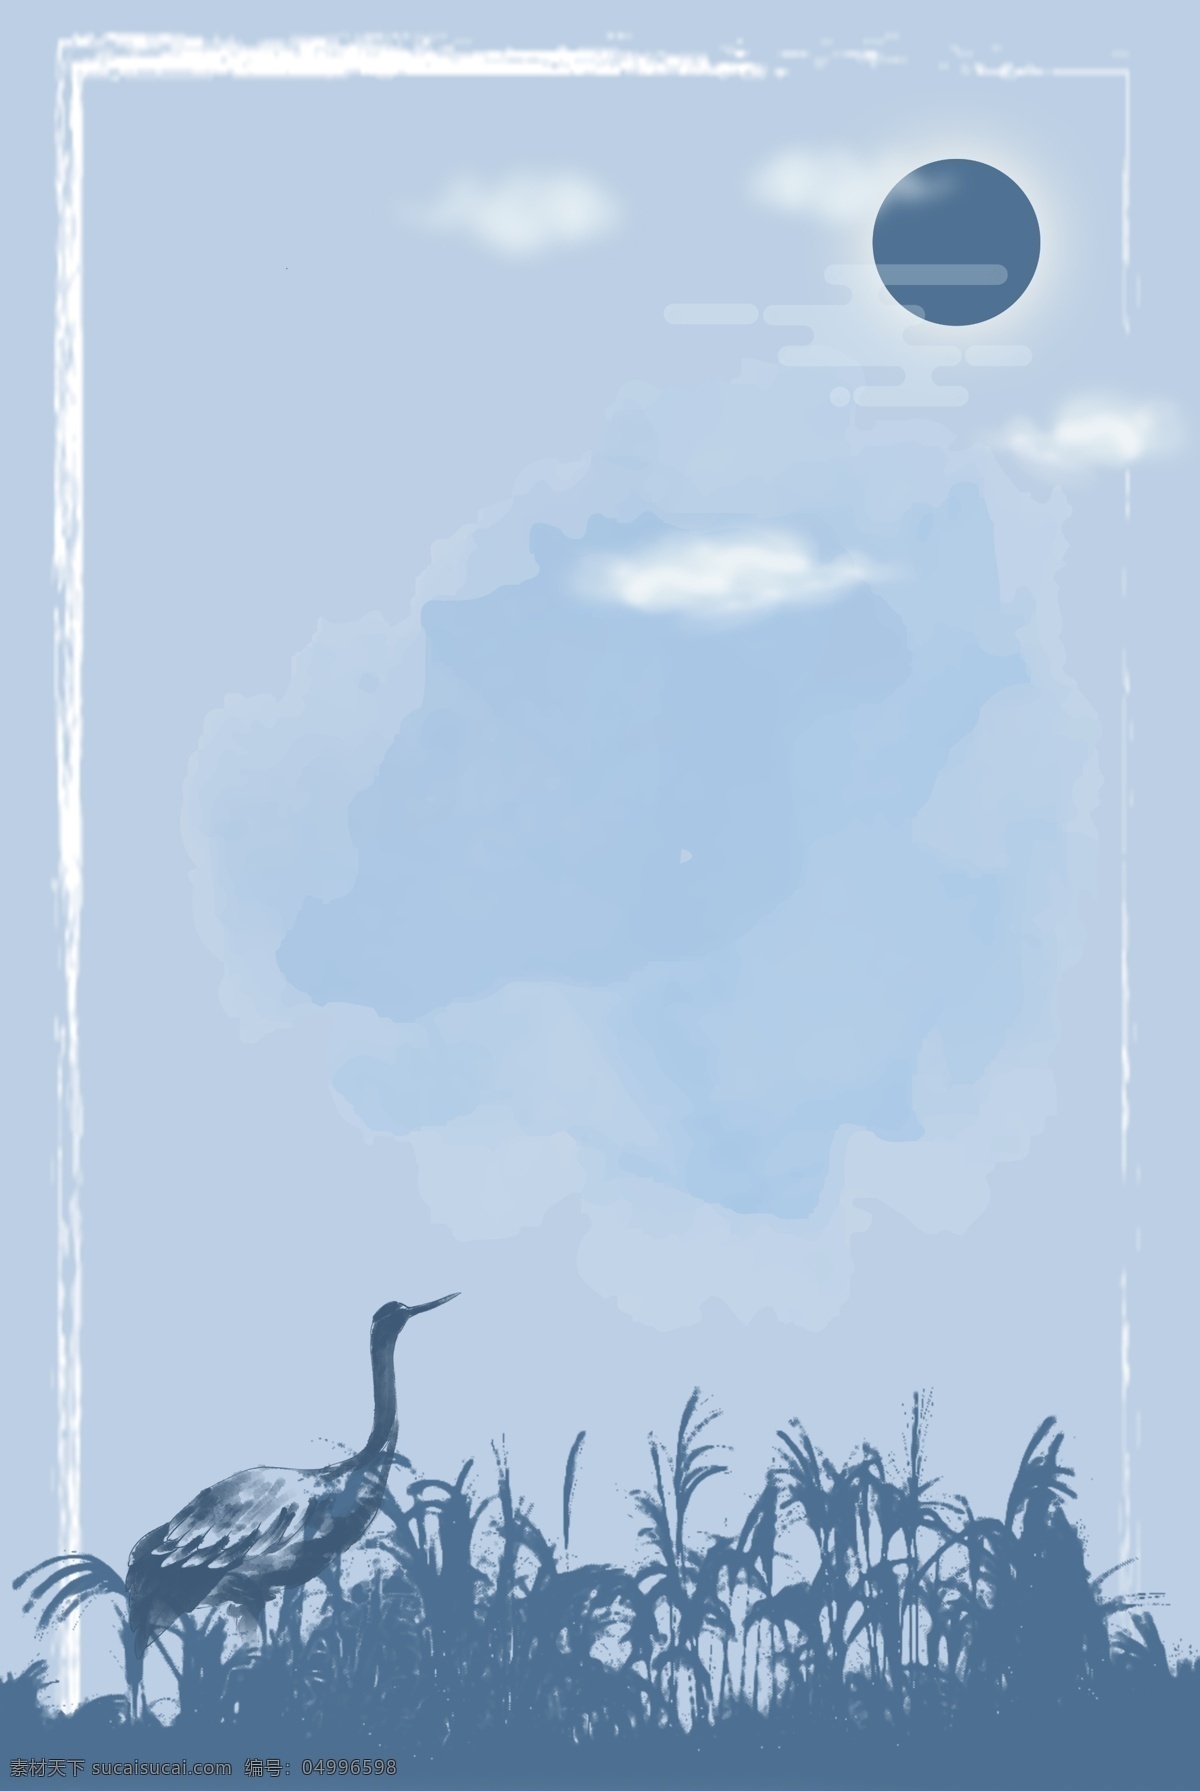 蓝色 简约 世界 湿地 日 剪影 海报 背景 质感 世界湿地日 芦苇 边框